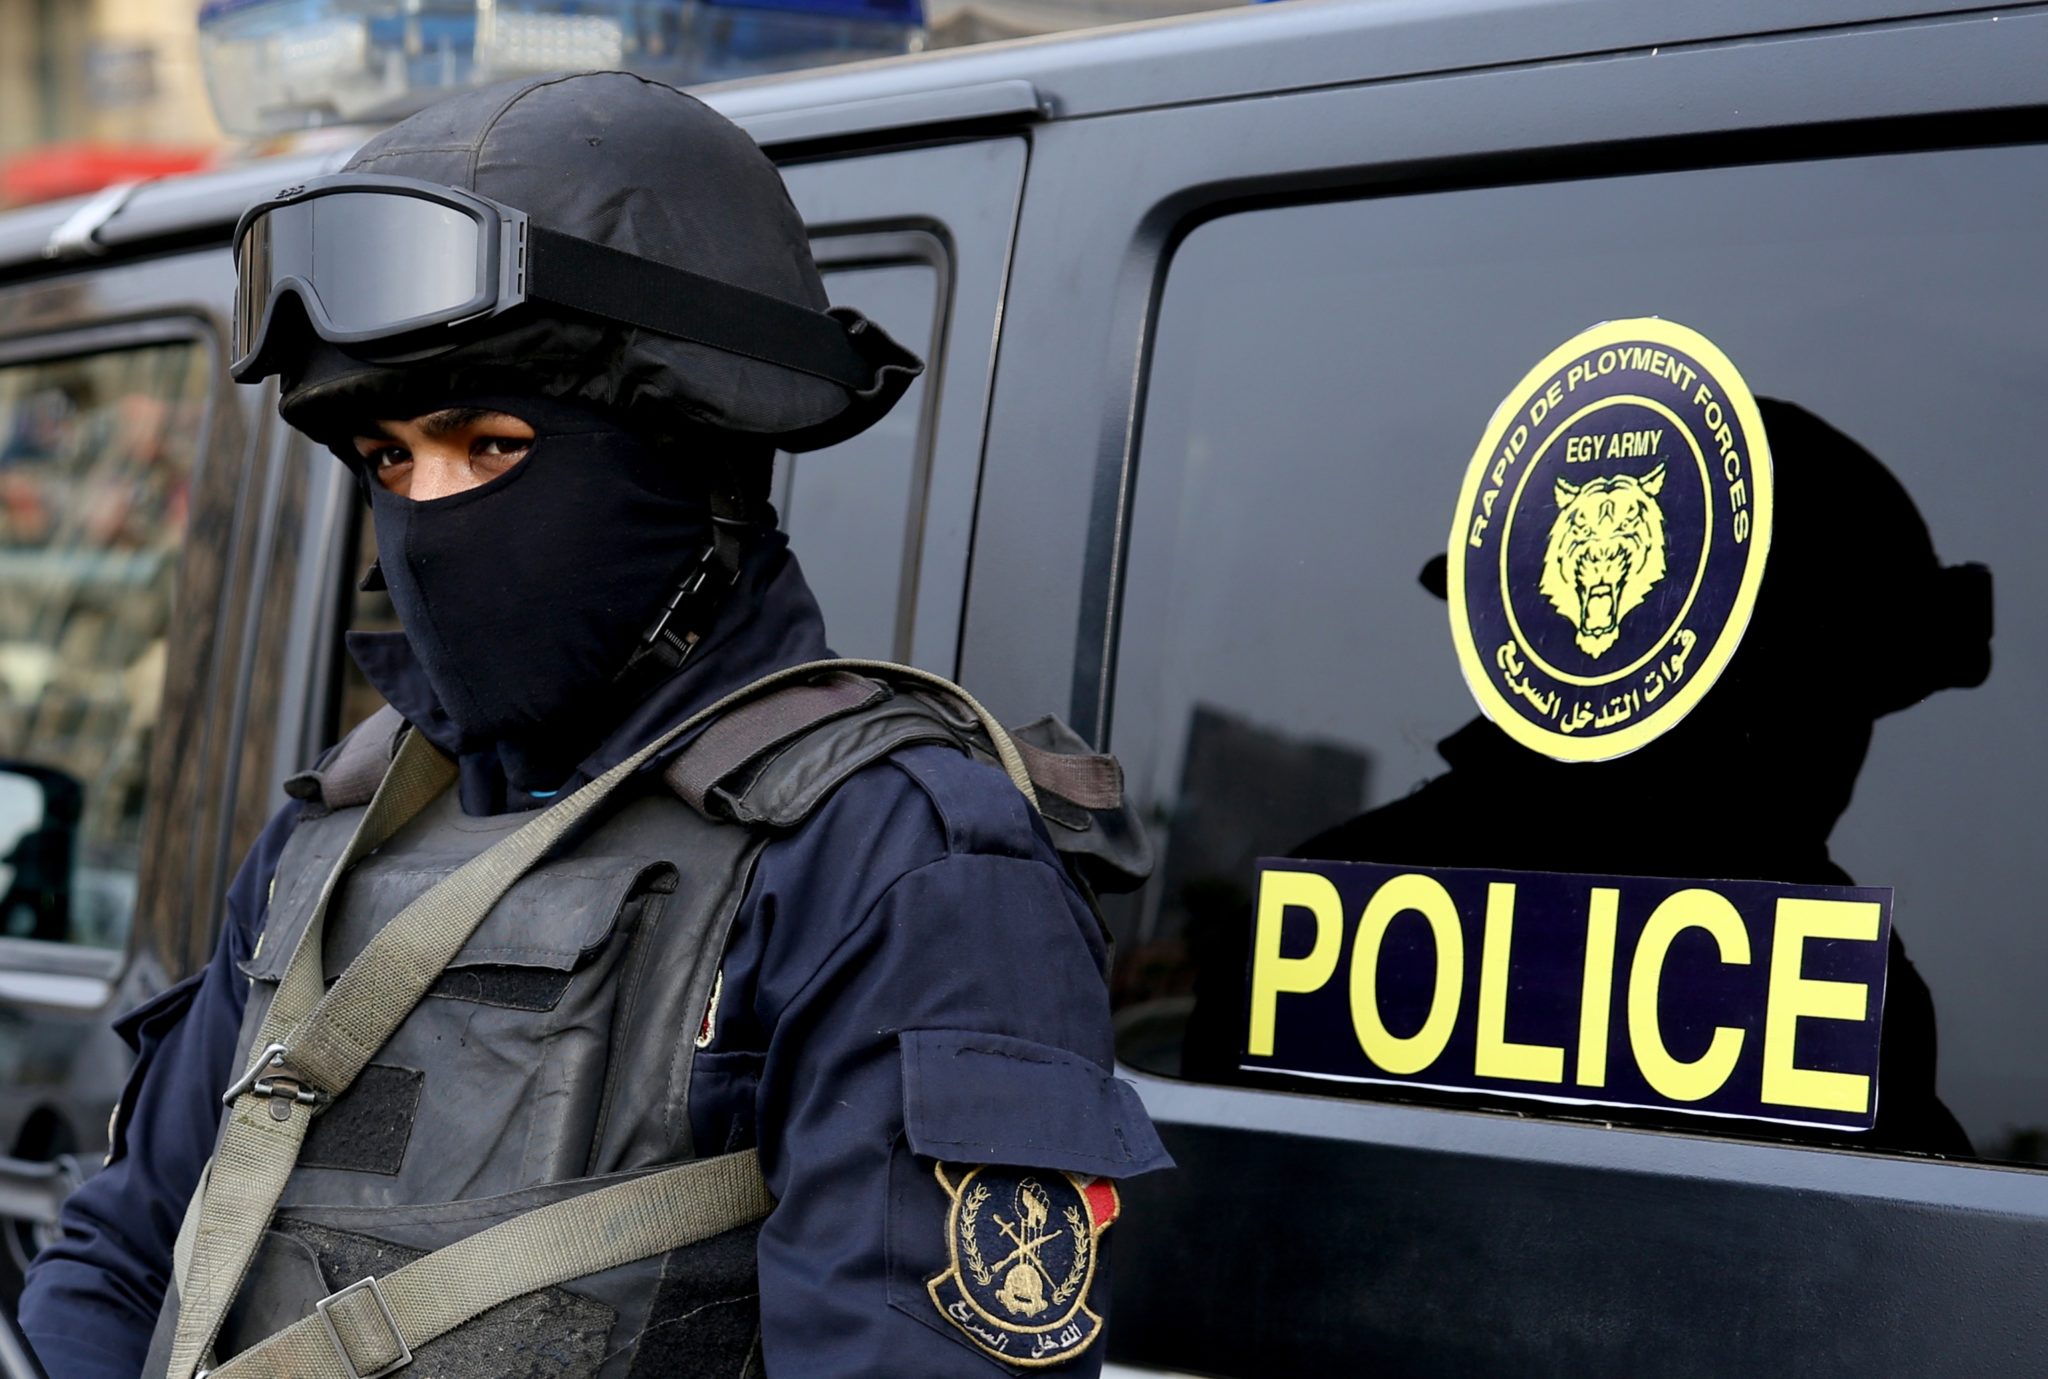 قوات الأمن المصري